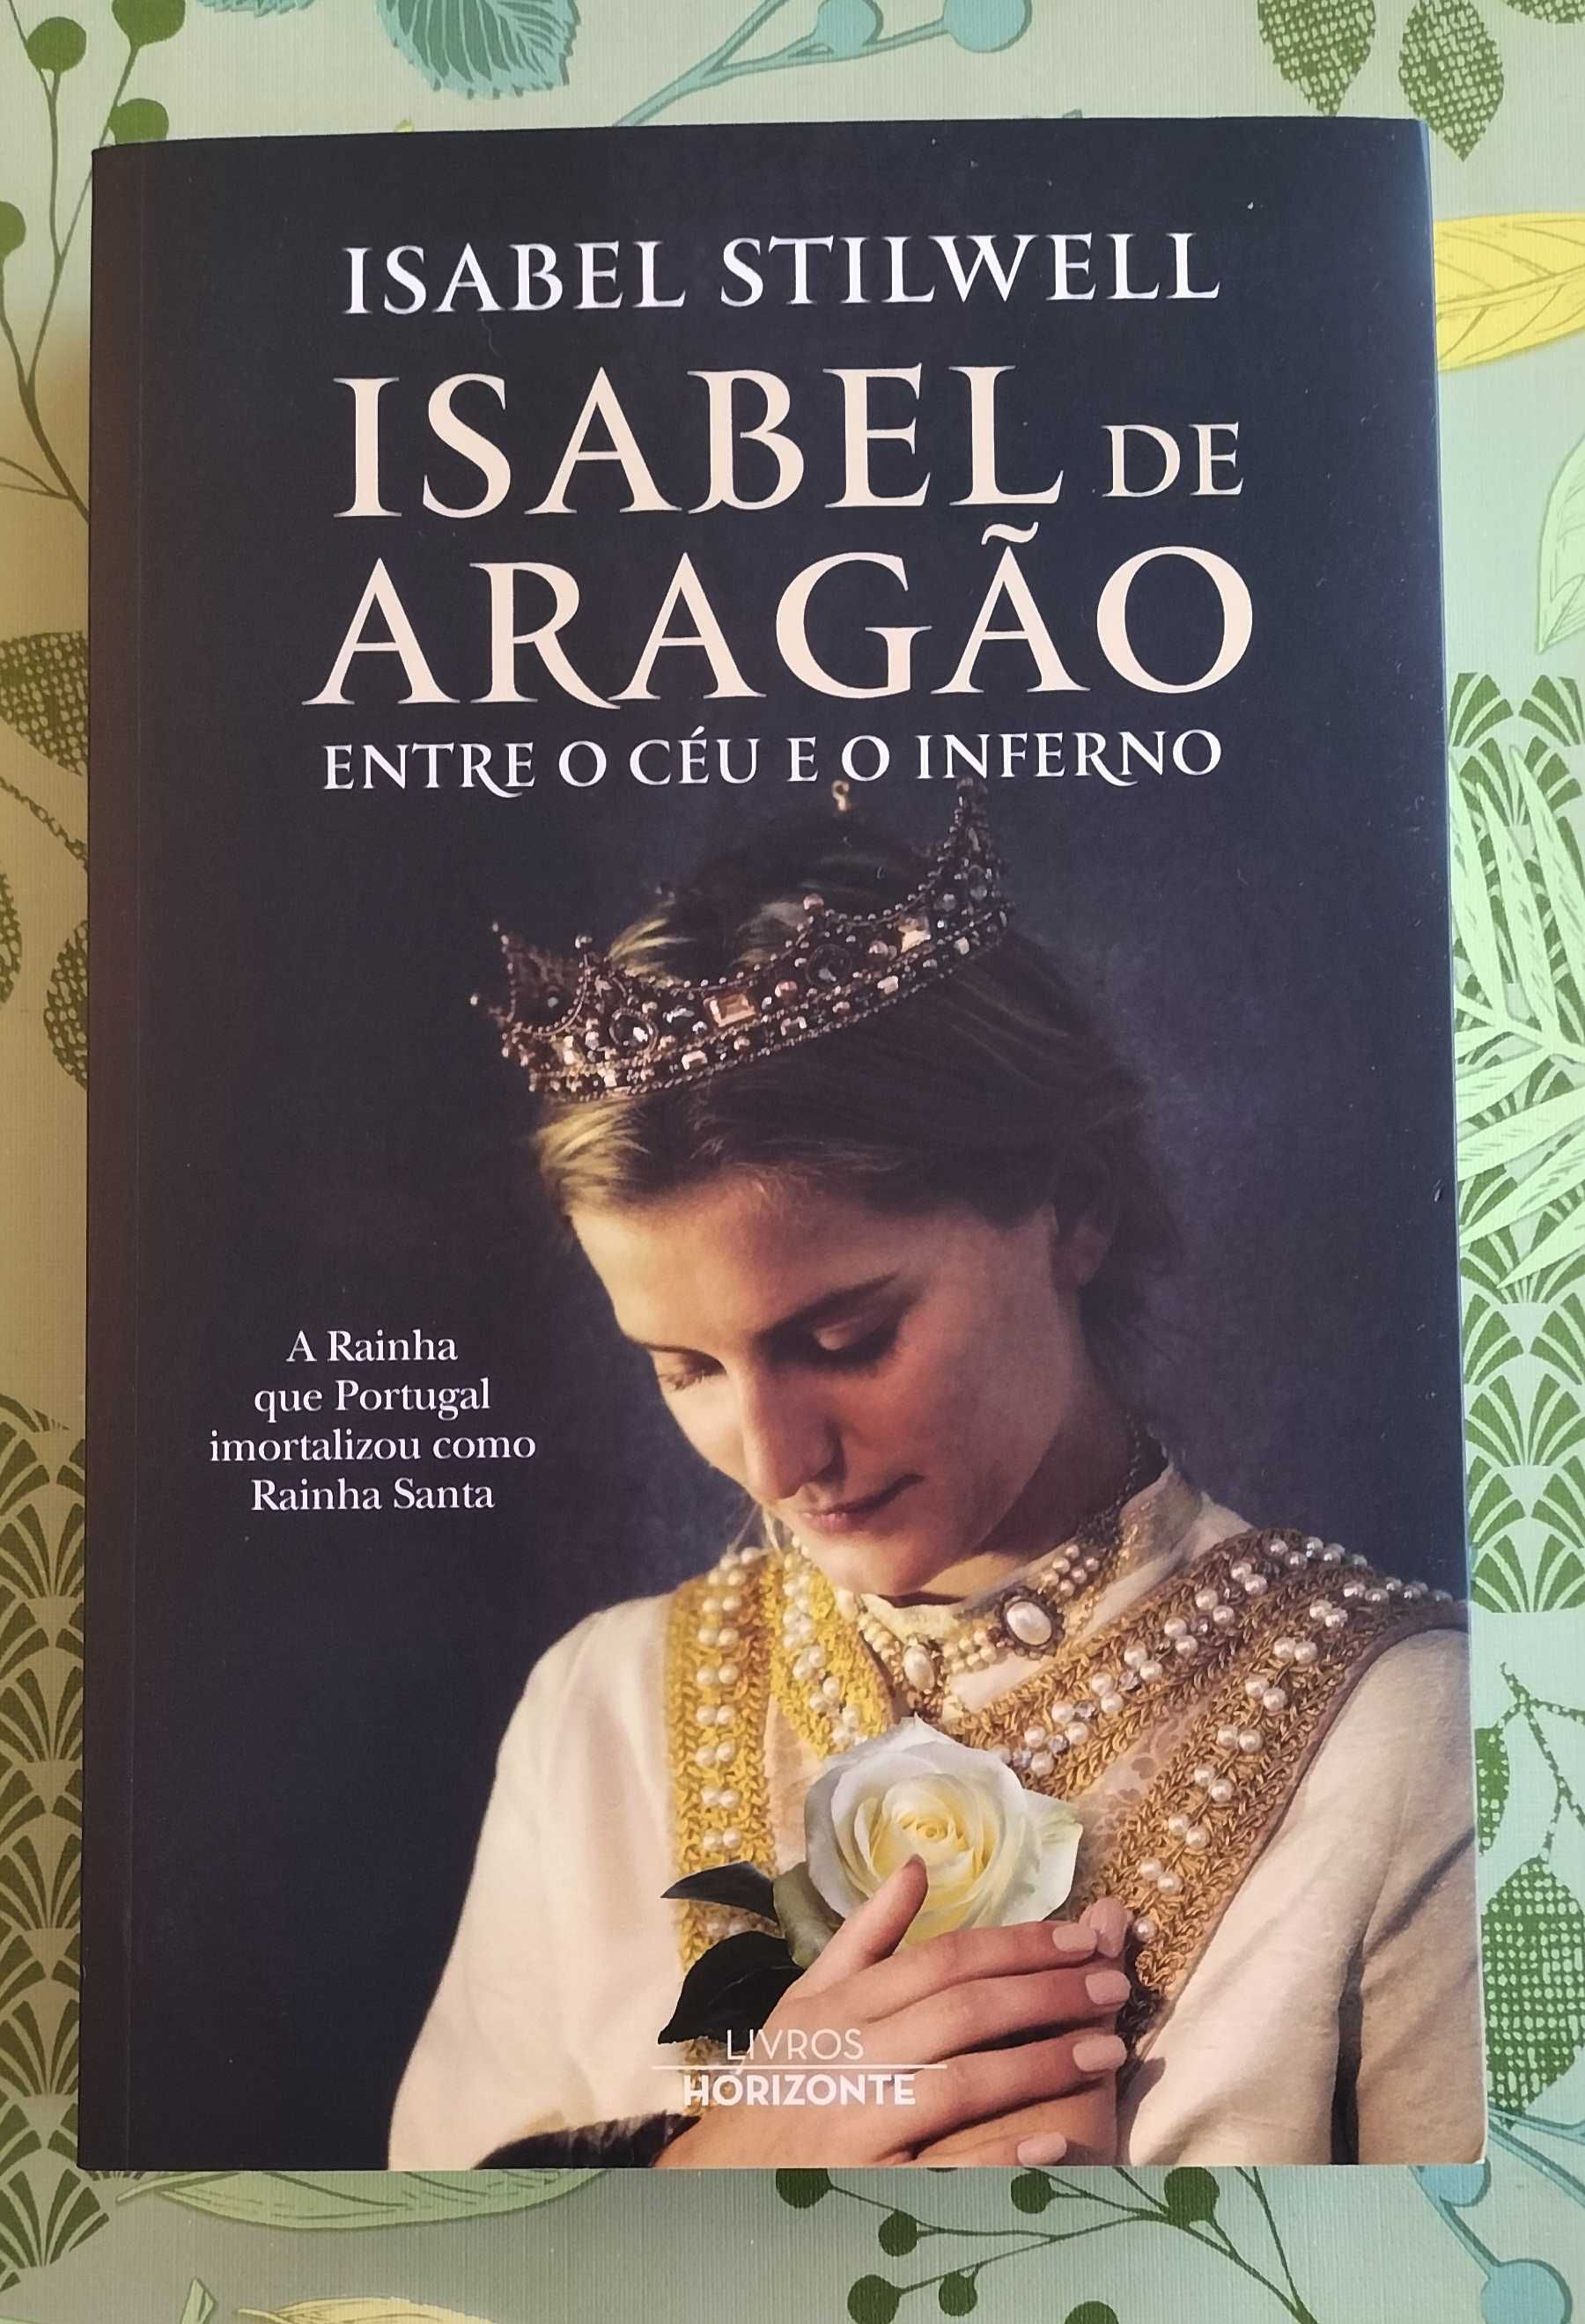 Livro "Isabel de Aragão" Isabel Stilwell - NOVO